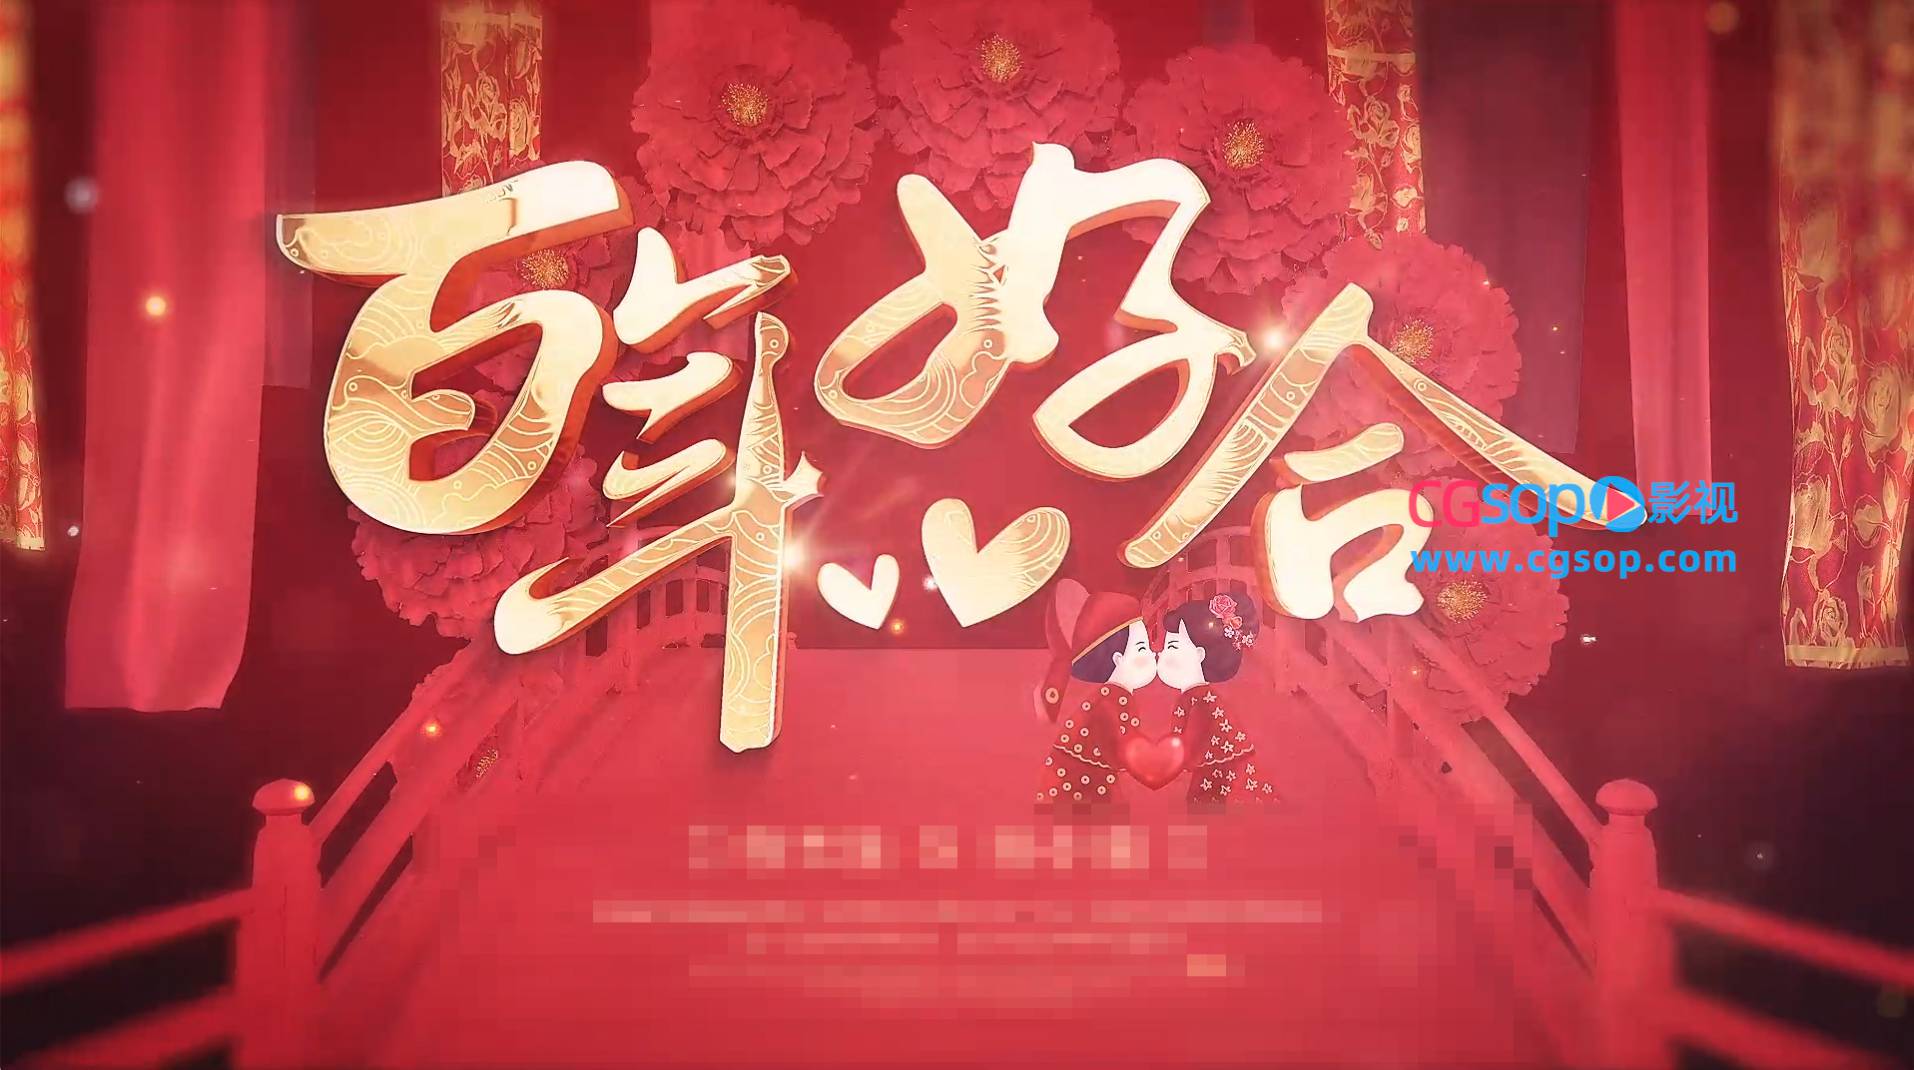 喜庆红色中式古典婚礼结婚照片展示AE模板